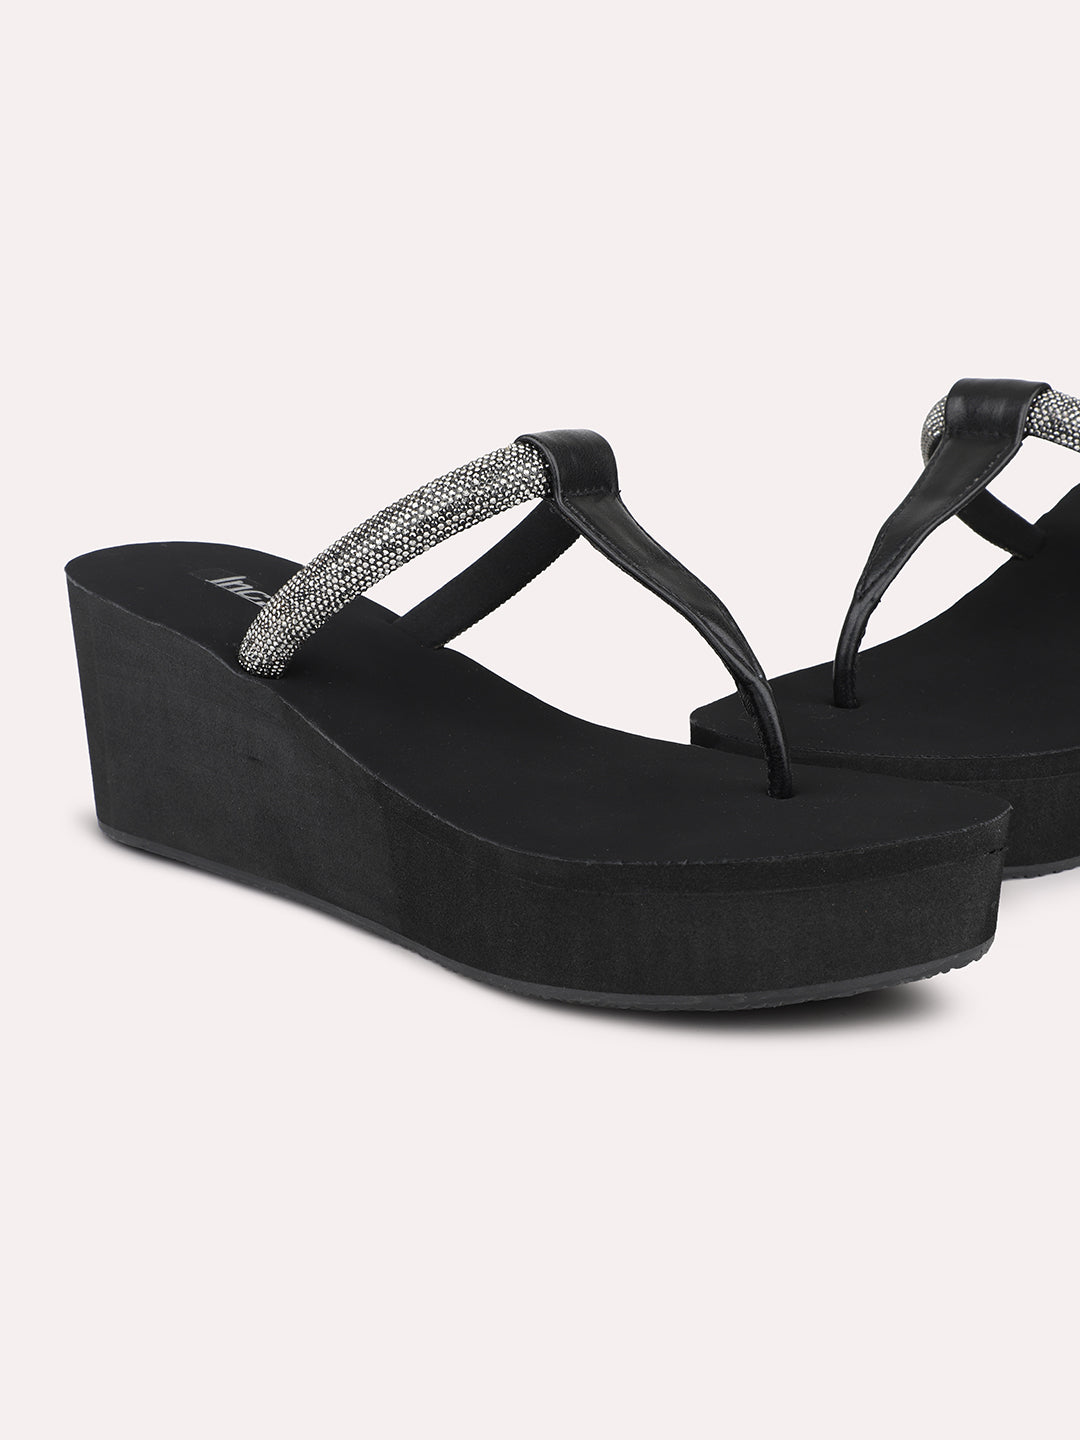 Women Black Embellished Wedges Sandals